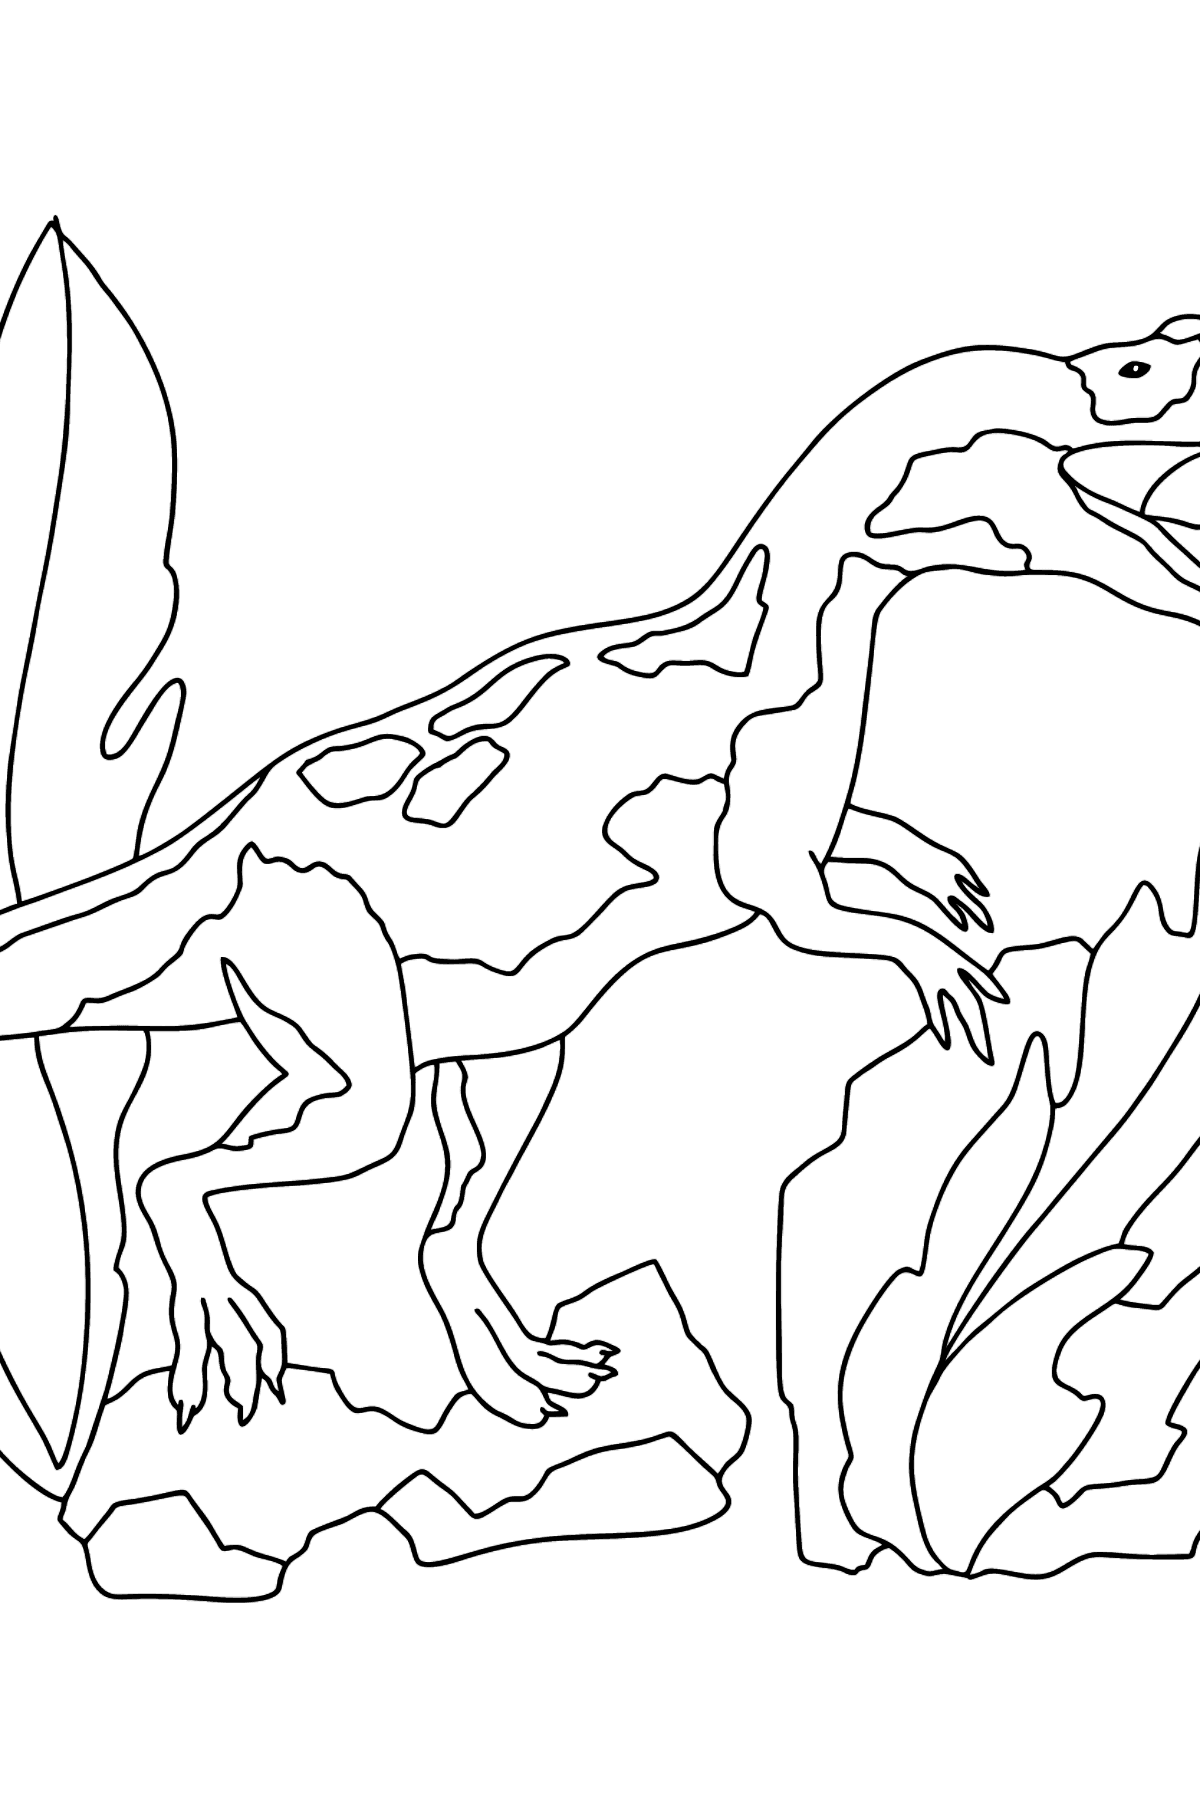 Desen de colorat dinozaur jurasic (dificil) - Desene de colorat pentru copii